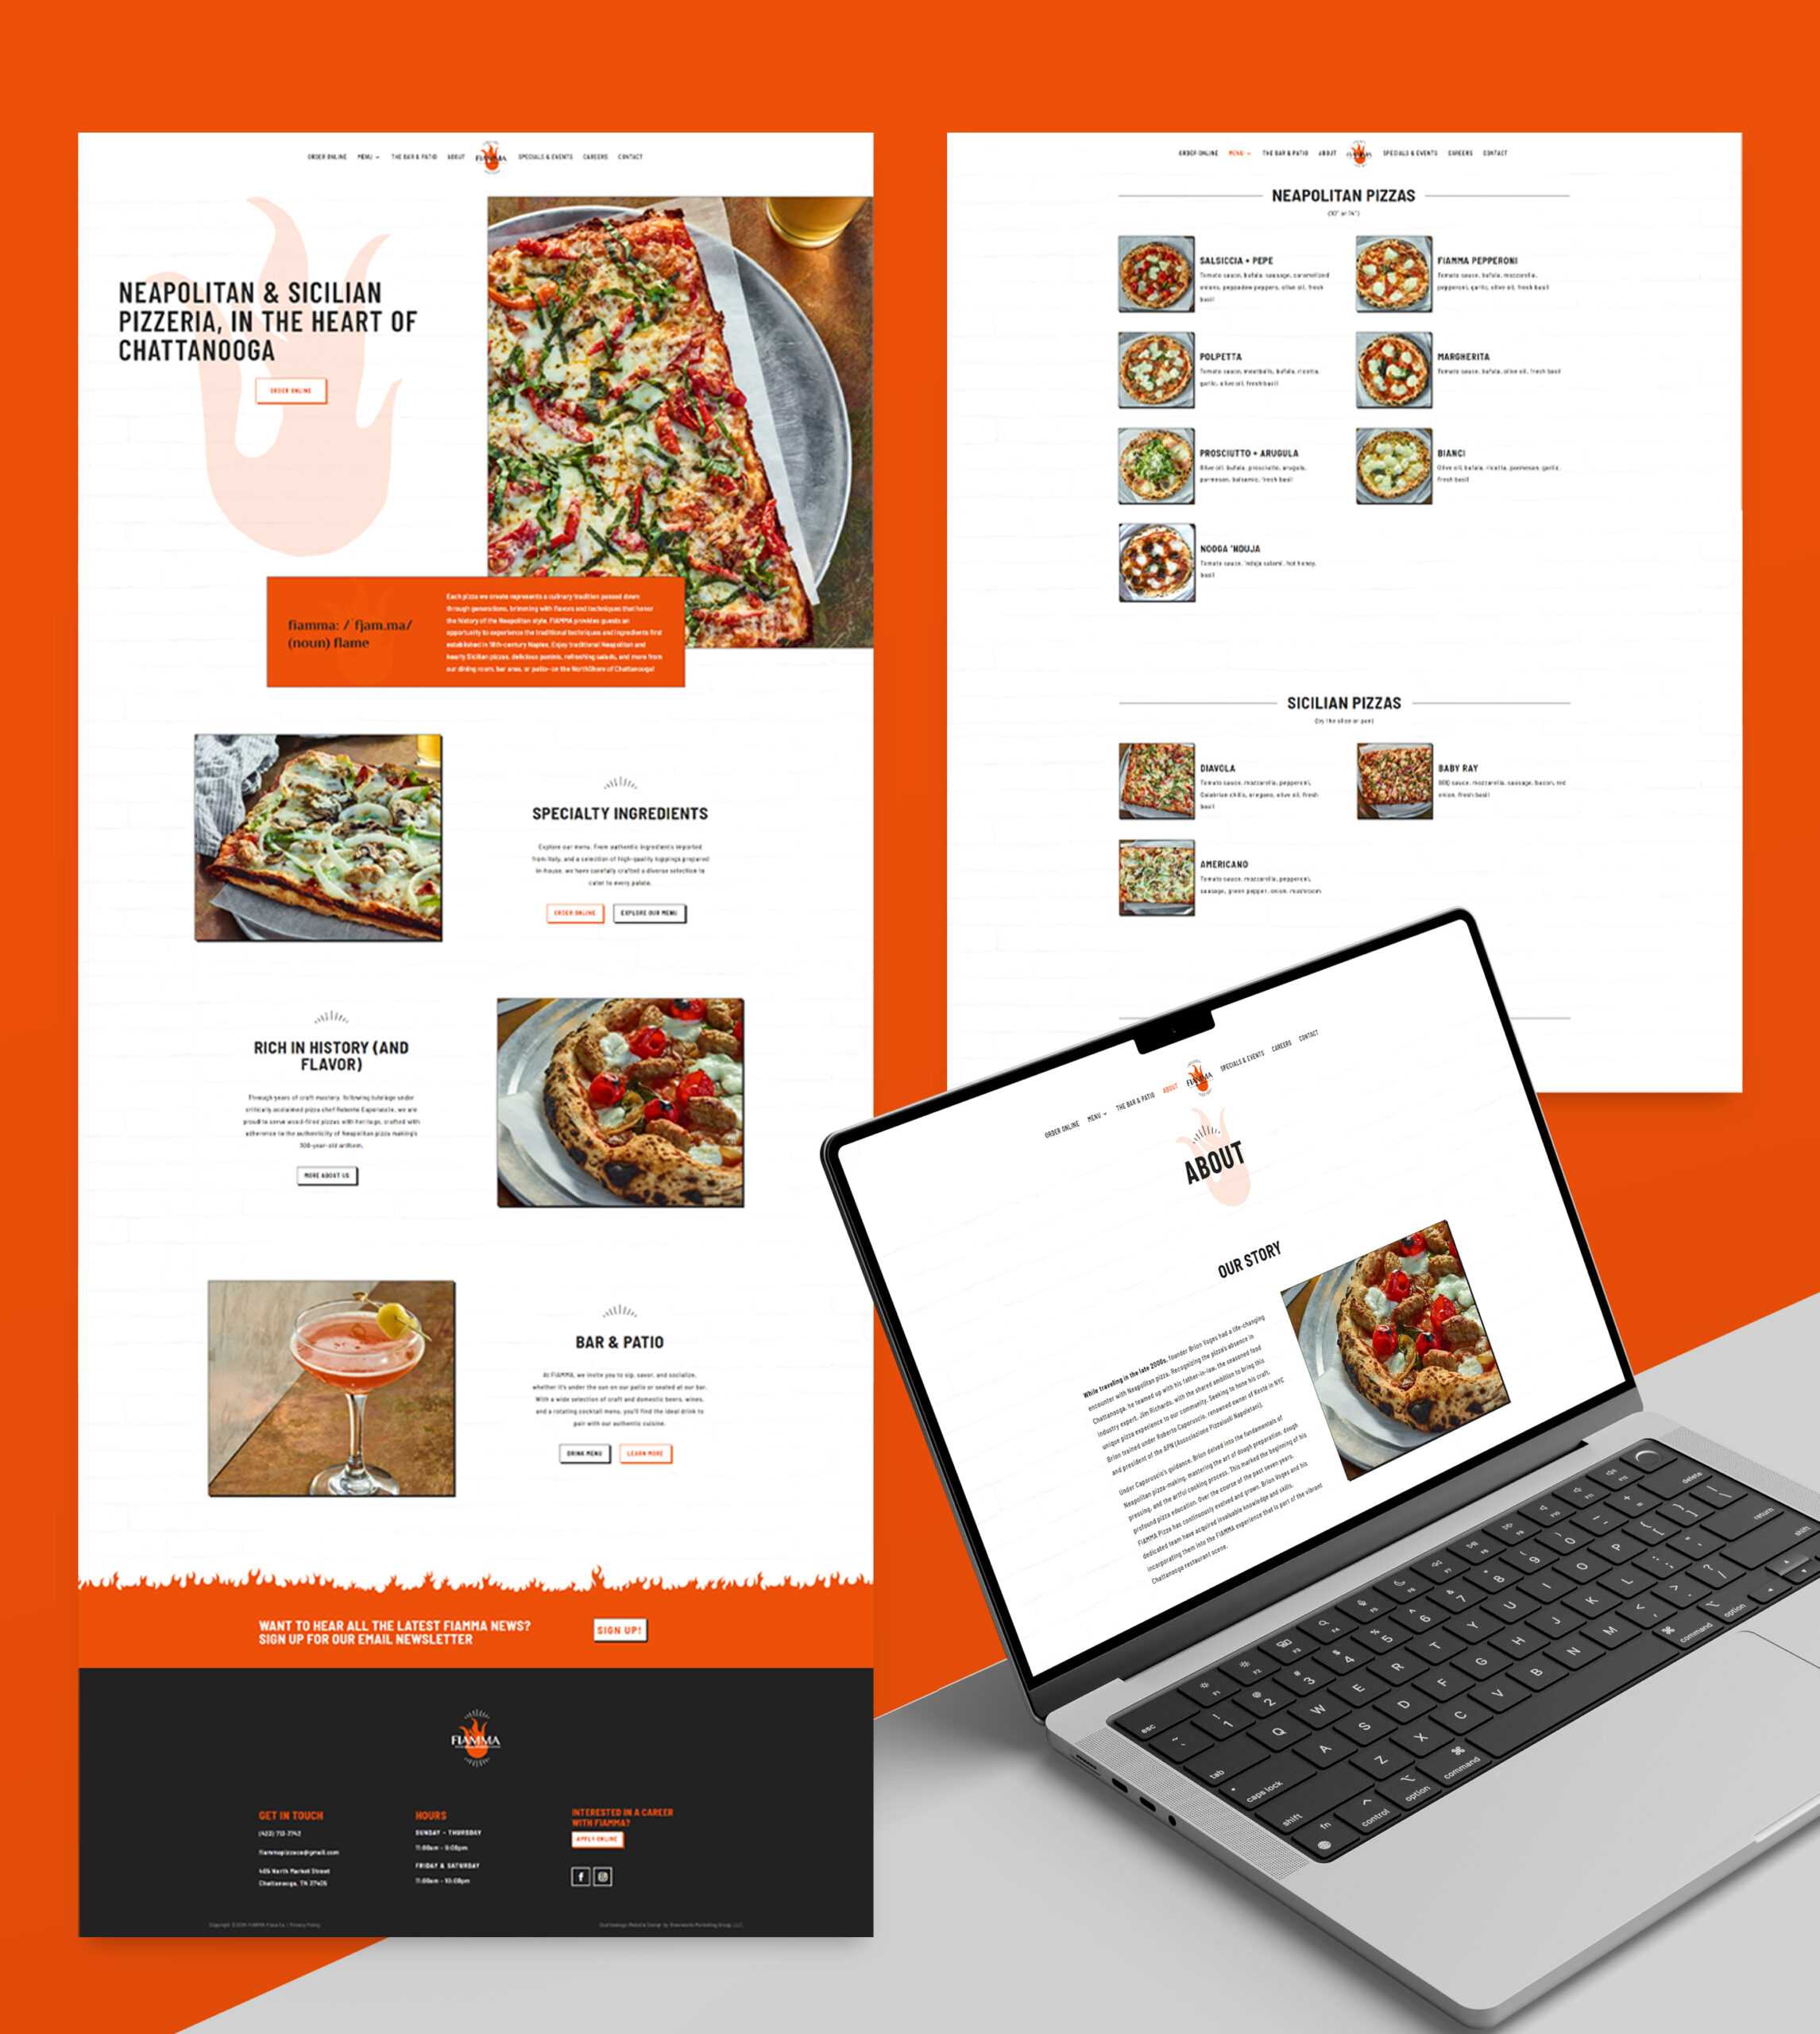 Fiamma Pizza Company Website Design